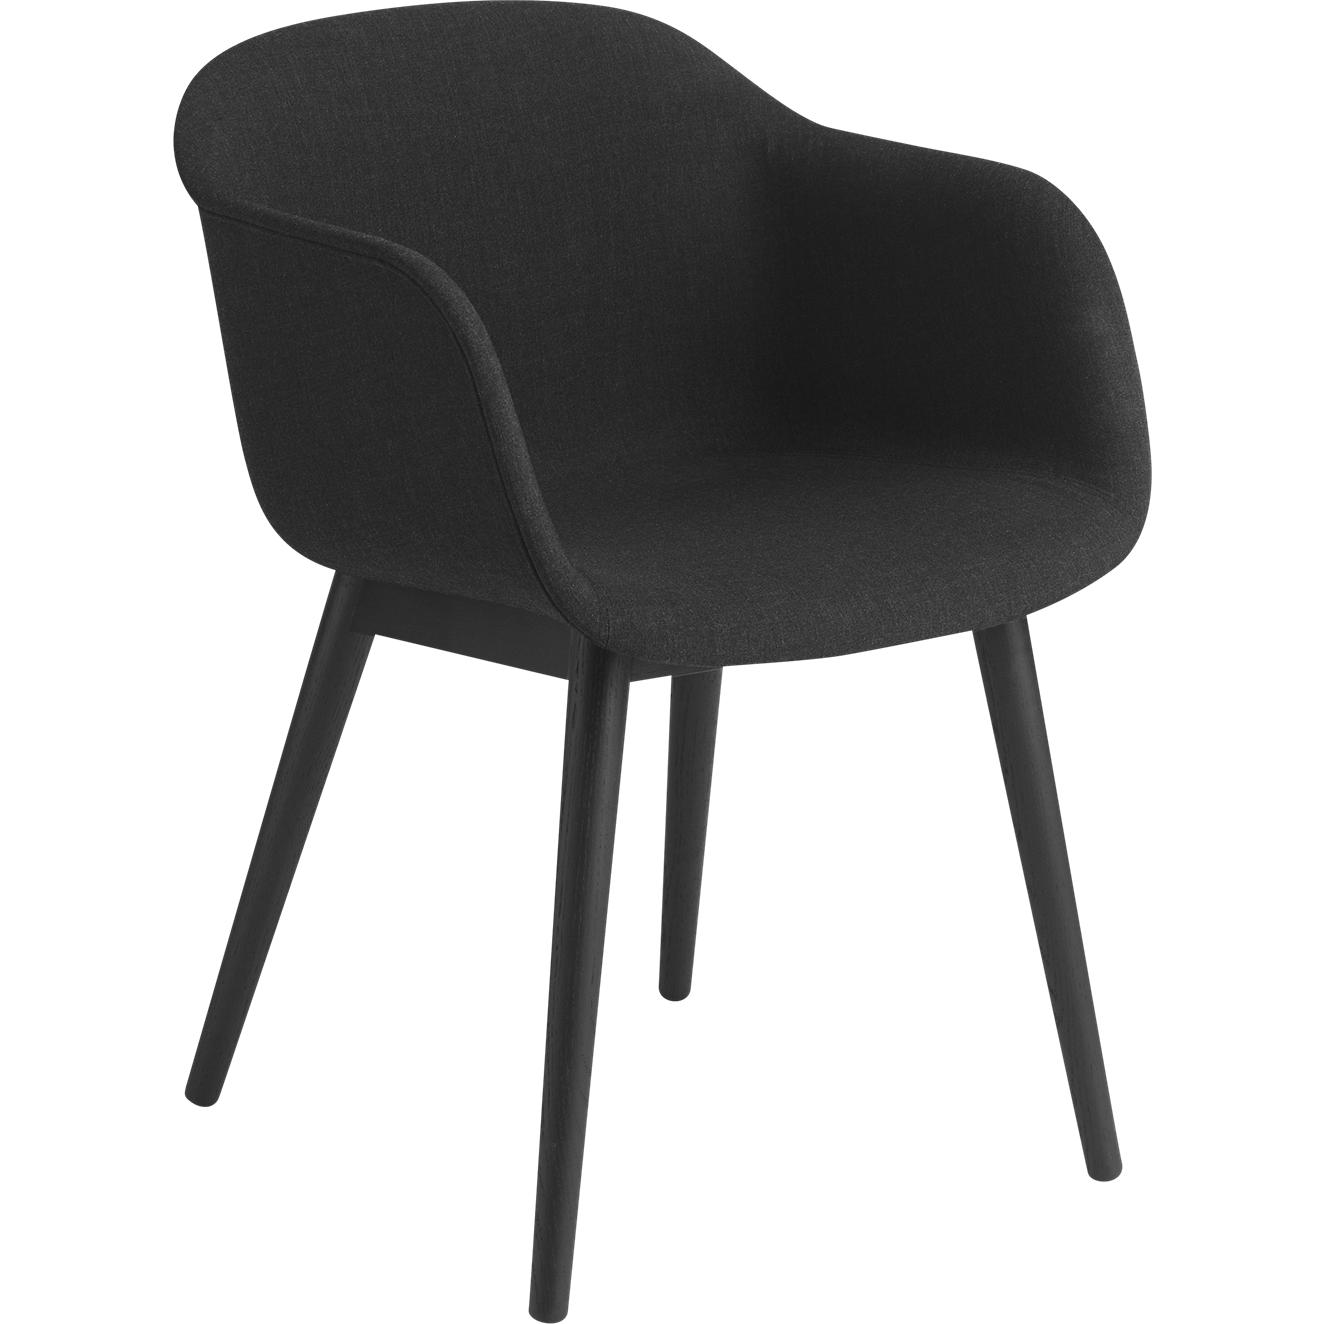 Muuto vezel fauteuil houten benen, stoffen stoel, zwart